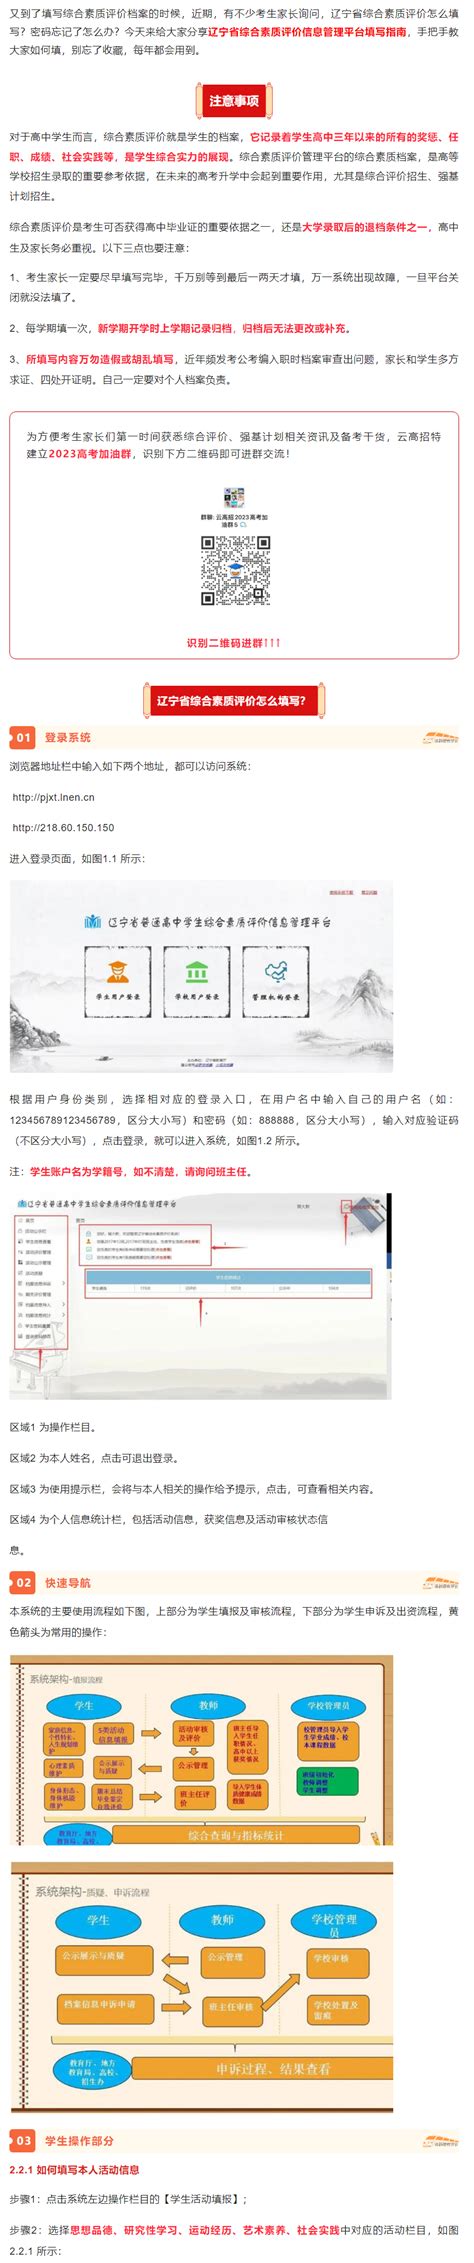 2022年湖南省综合素质评价EEID账号找回流程最详细解说 - 哔哩哔哩